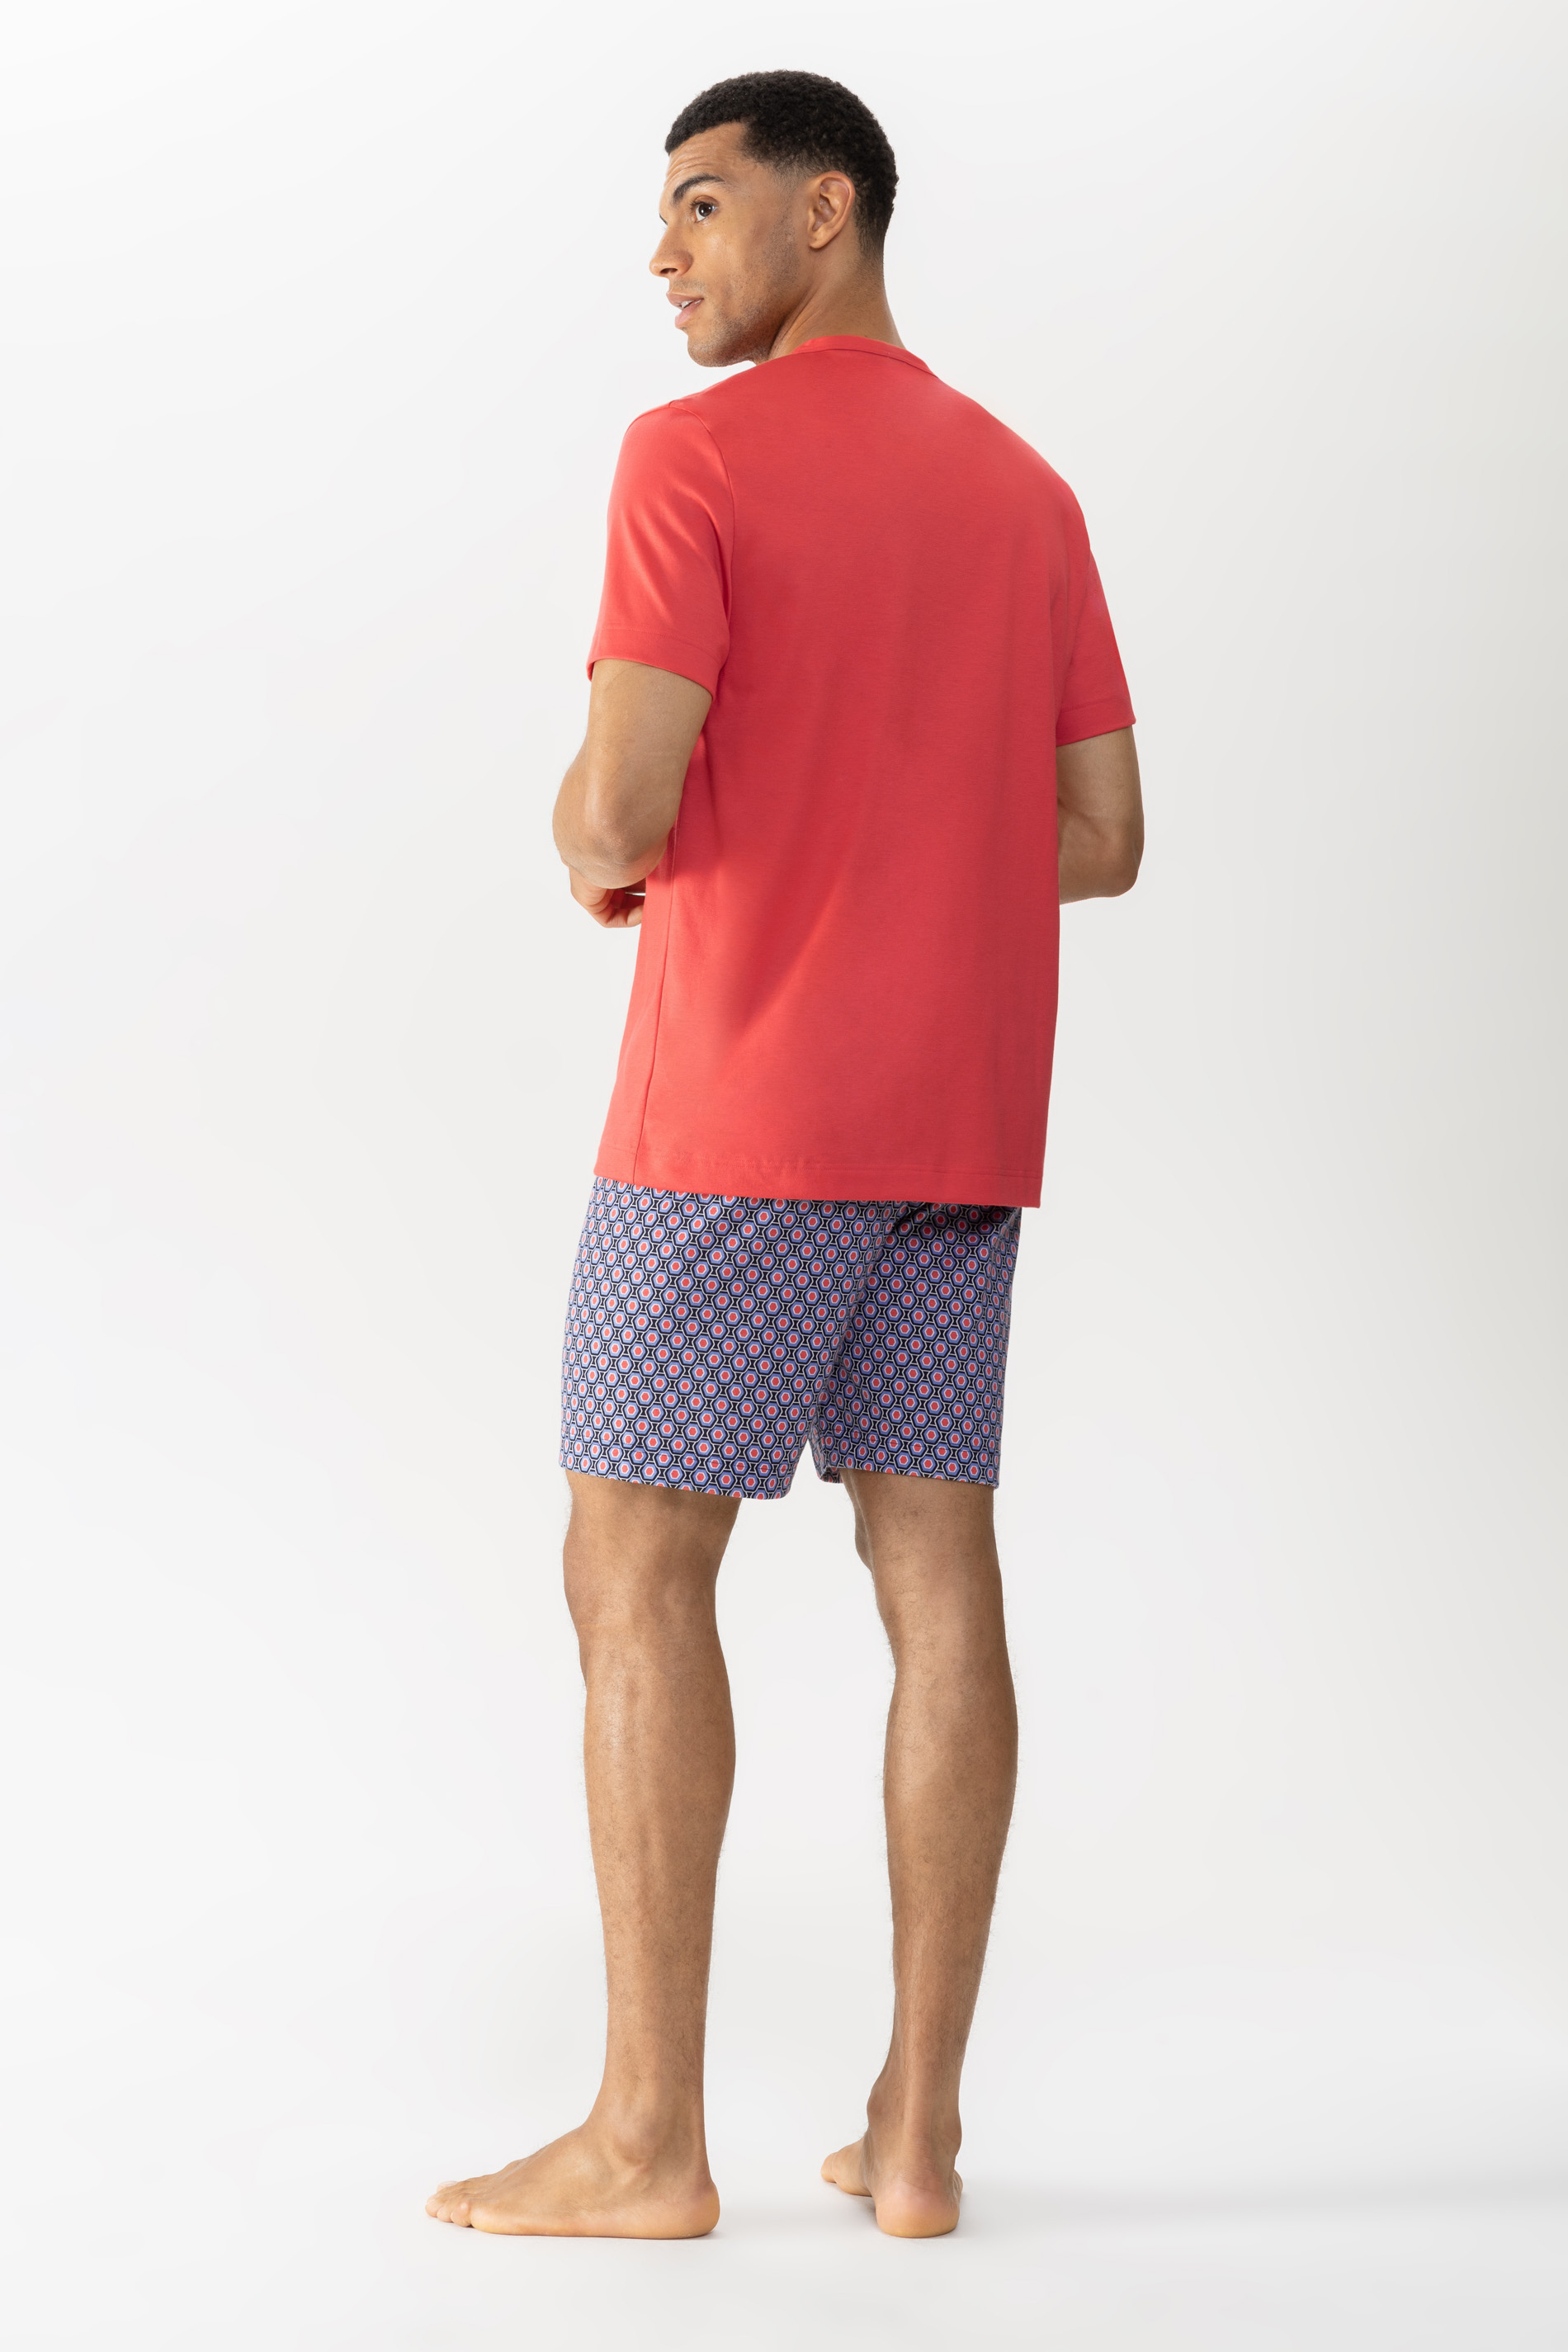 Pyjamas Serie Red Geo Rear View | mey®